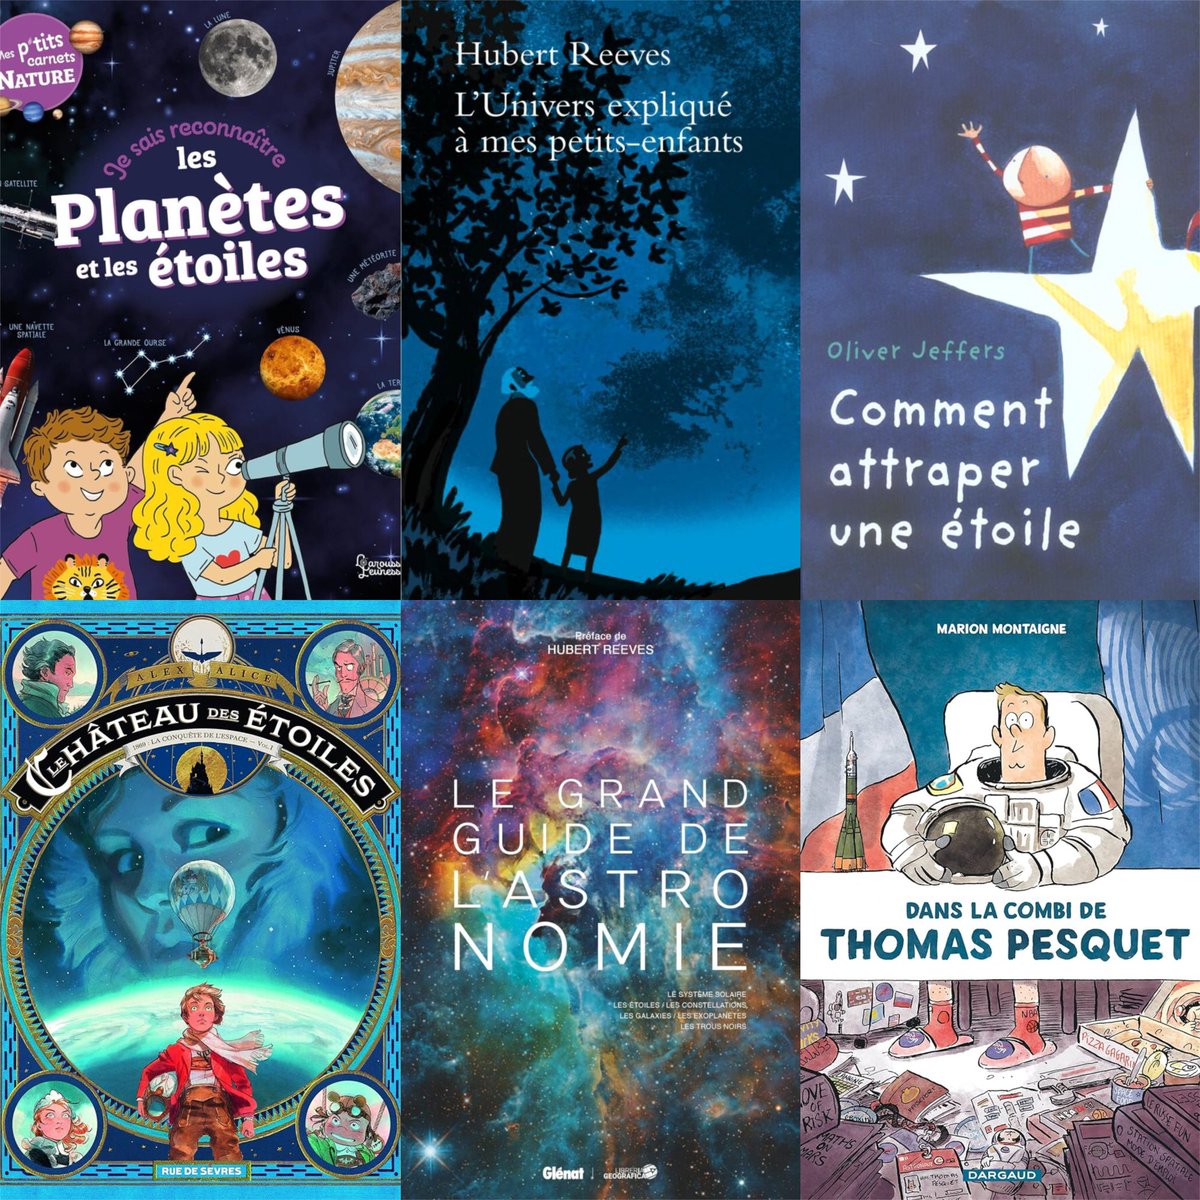 Découvrez notre sélection des meilleurs livres jeunesse pour initier les enfants à l’astronomie !😍🚸📚🪐✨🚀

Lire l'article👉urlz.fr/q5I8

#culturadvisor #culture #livres #lecture #lire #enfants #familles #éducation #apprentissage #science #sélection #recommandations